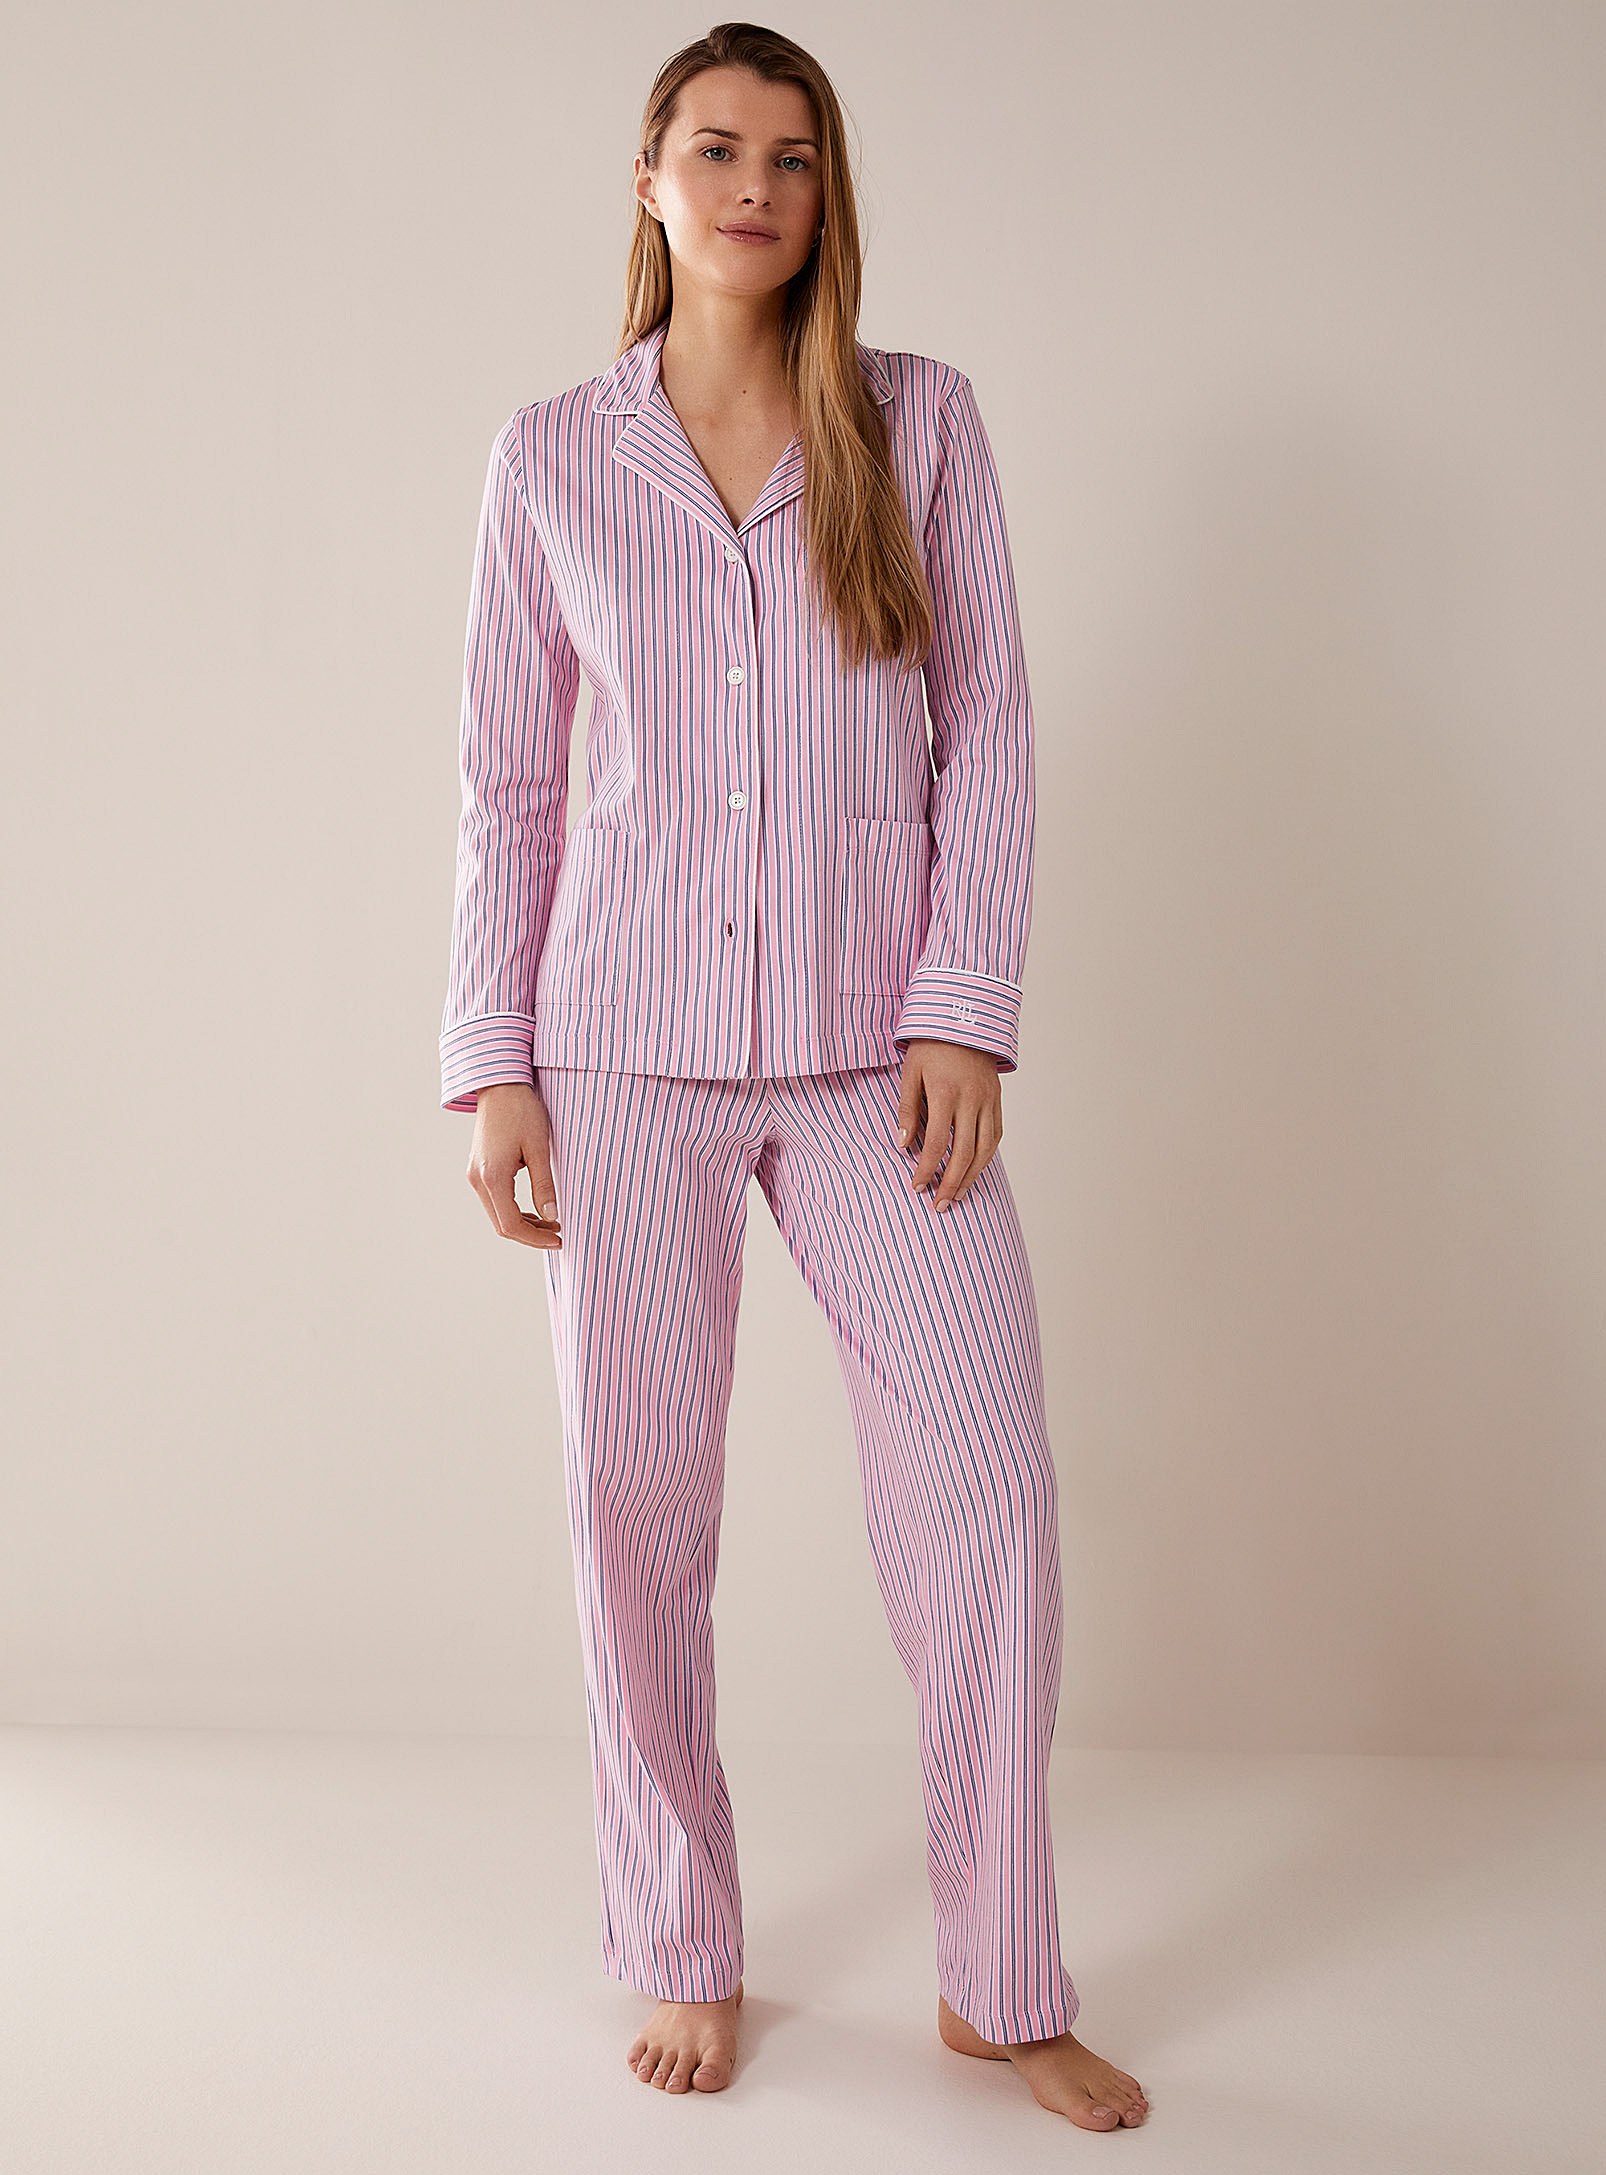 Lauren par Ralph - L'ensemble pyjama rayé rose et bleu